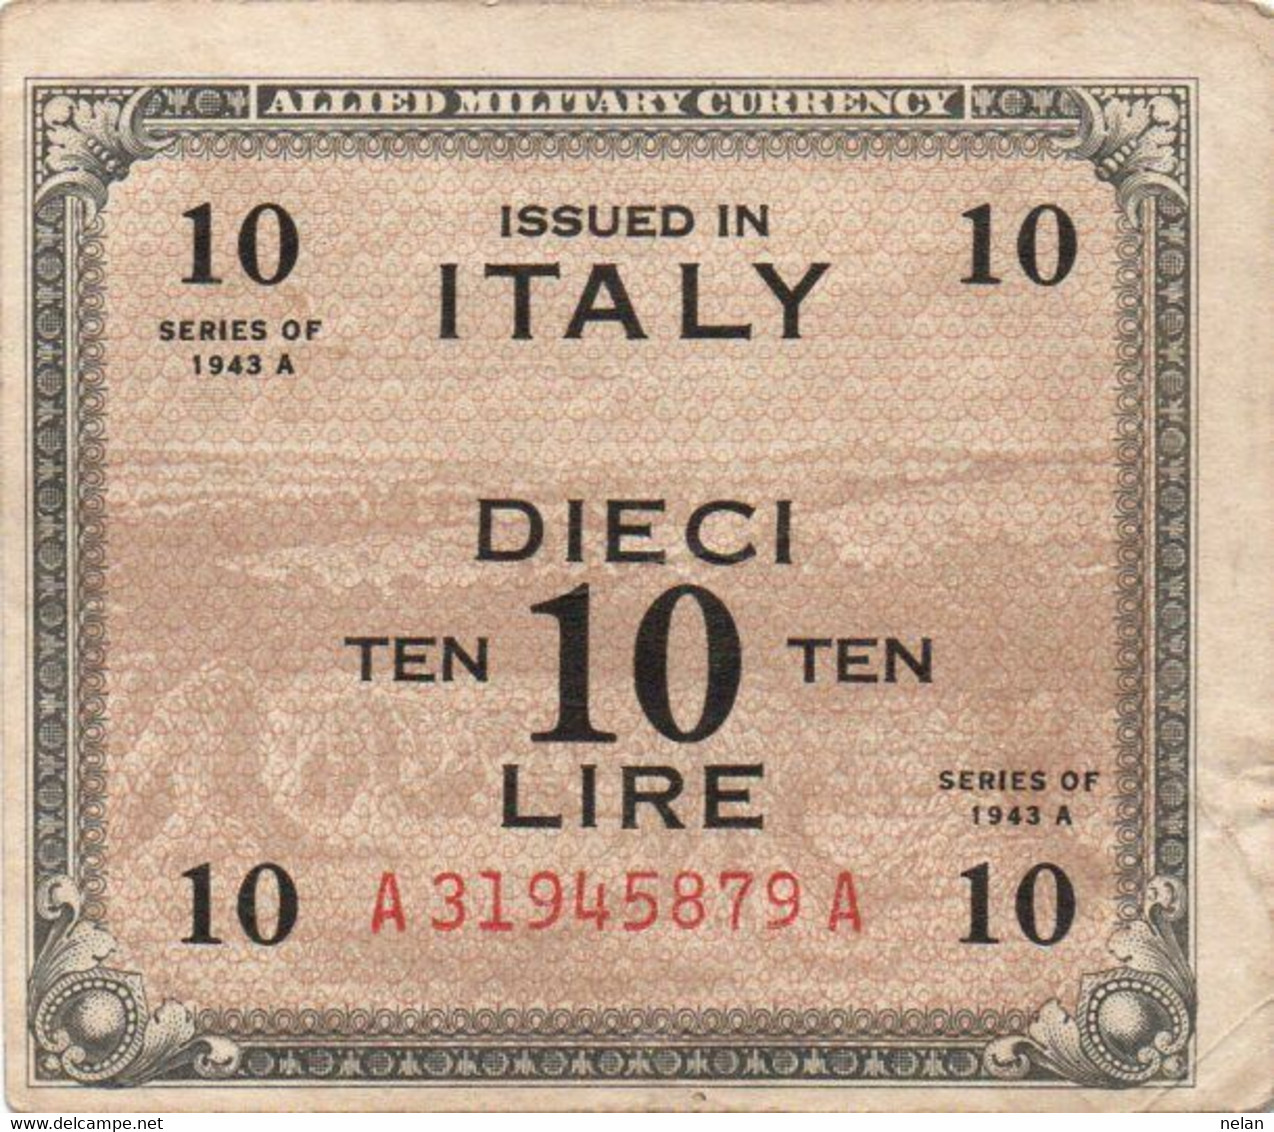 ITALIA 10 LIRE -1943 P- M13 - BILINGVE - Ocupación Aliados Segunda Guerra Mundial